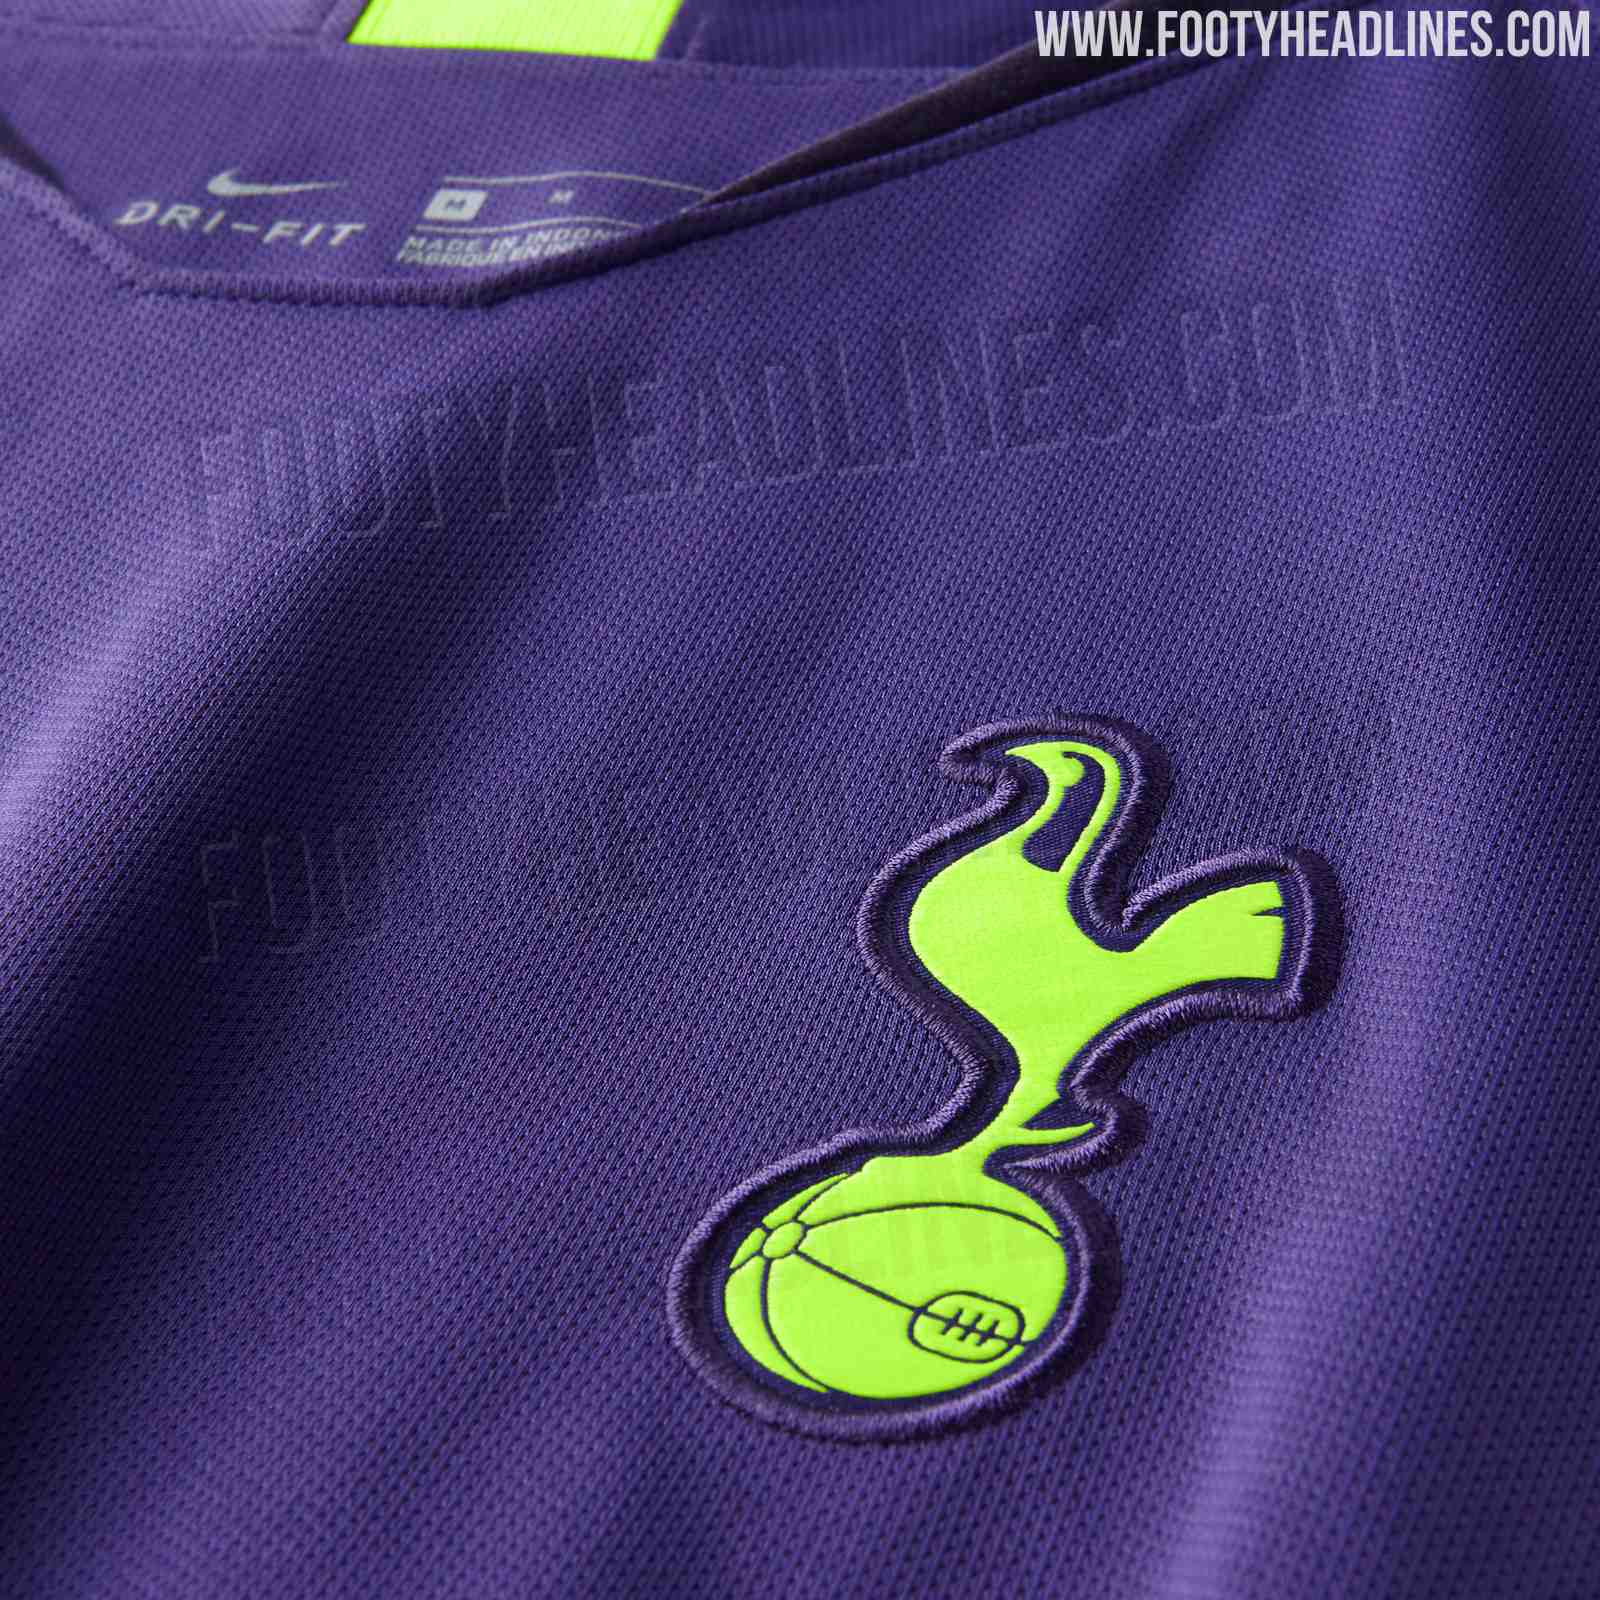 Garish: Nike Tottenham 18-19 Goalkeeper Kit Released - Footy Headlines